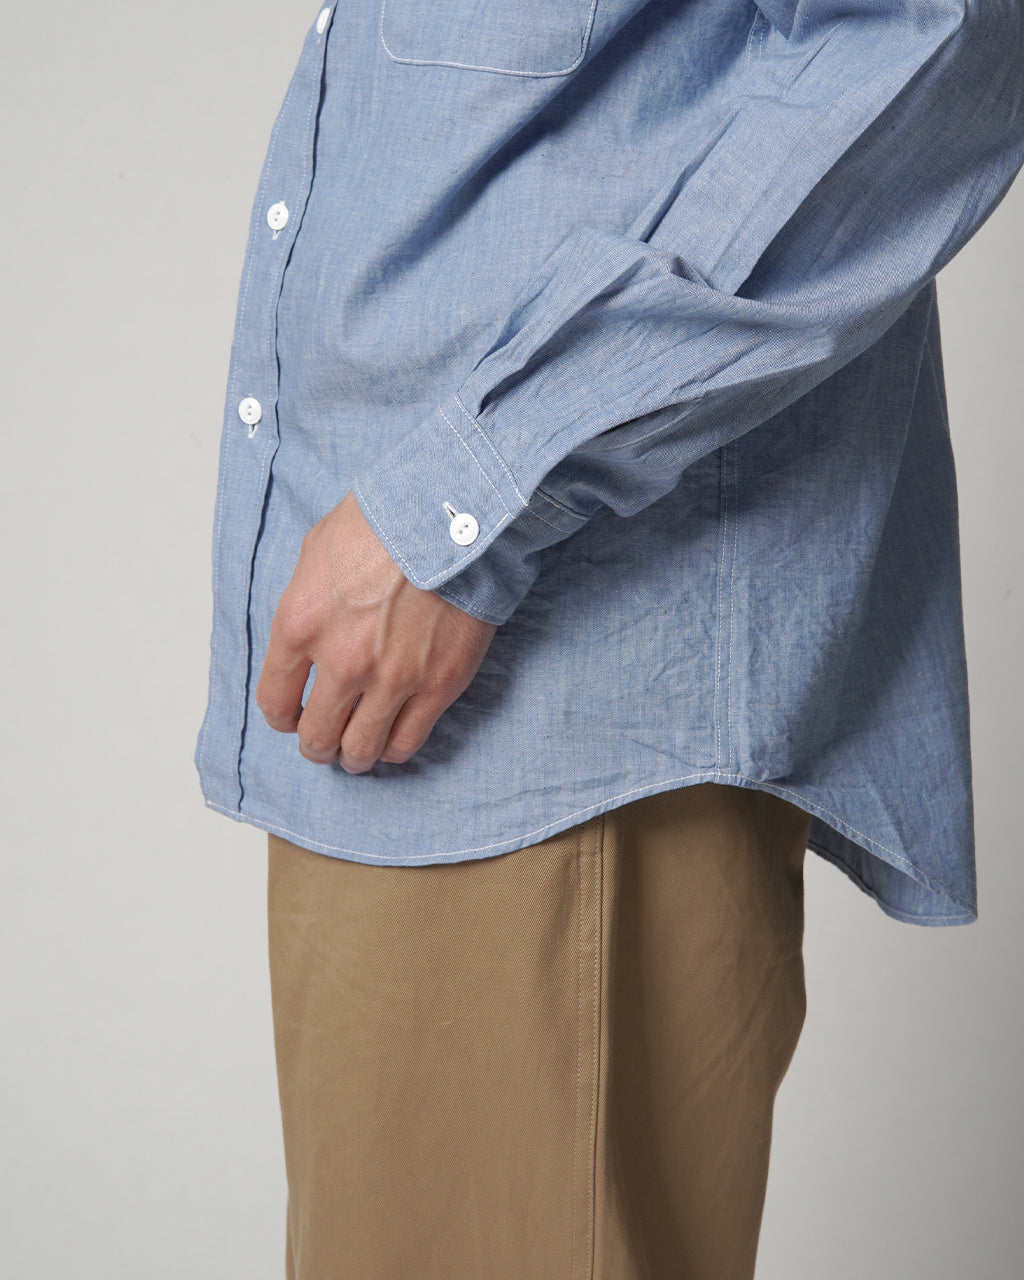 MANUAL ALPHABET マニュアルアルファベット ヴィンテージ シャンブレー ワークシャツ VINTAGE CHAMBRAY WORK SHIRTS MA-S-719【送料無料】